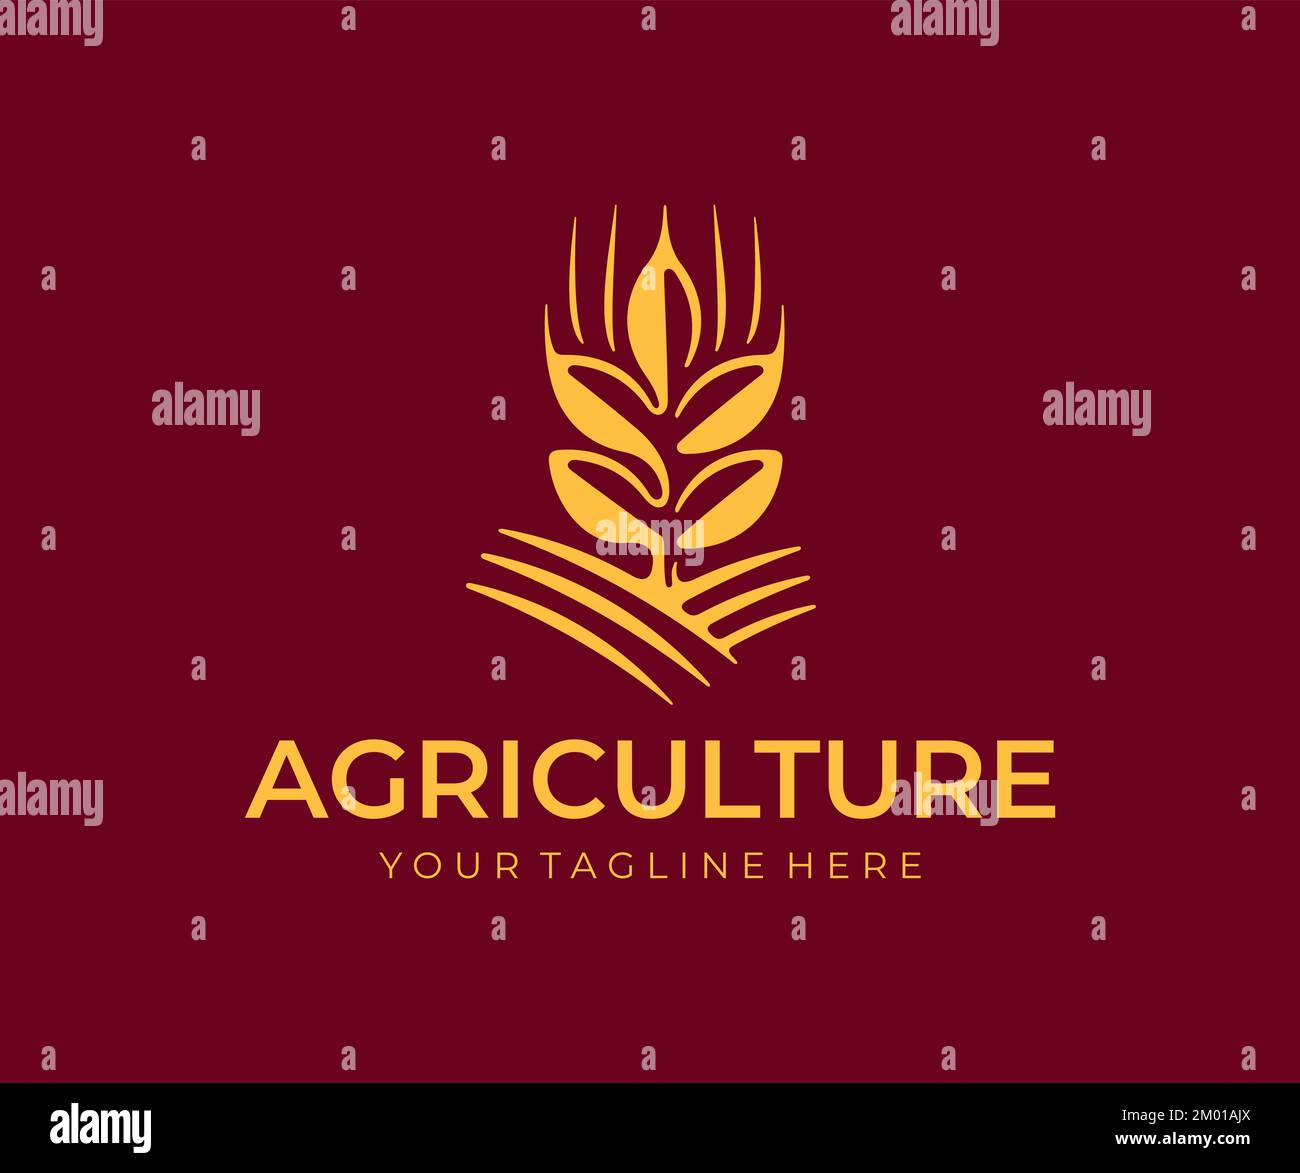 Weizenohren oder Stacheln mit Körnern, Vollkorn und Getreidekörnern, Logo-Design. Landwirtschaft, Getreideernte, Landwirtschaft, gesunde Lebensmittel und Bäckerei Stock Vektor